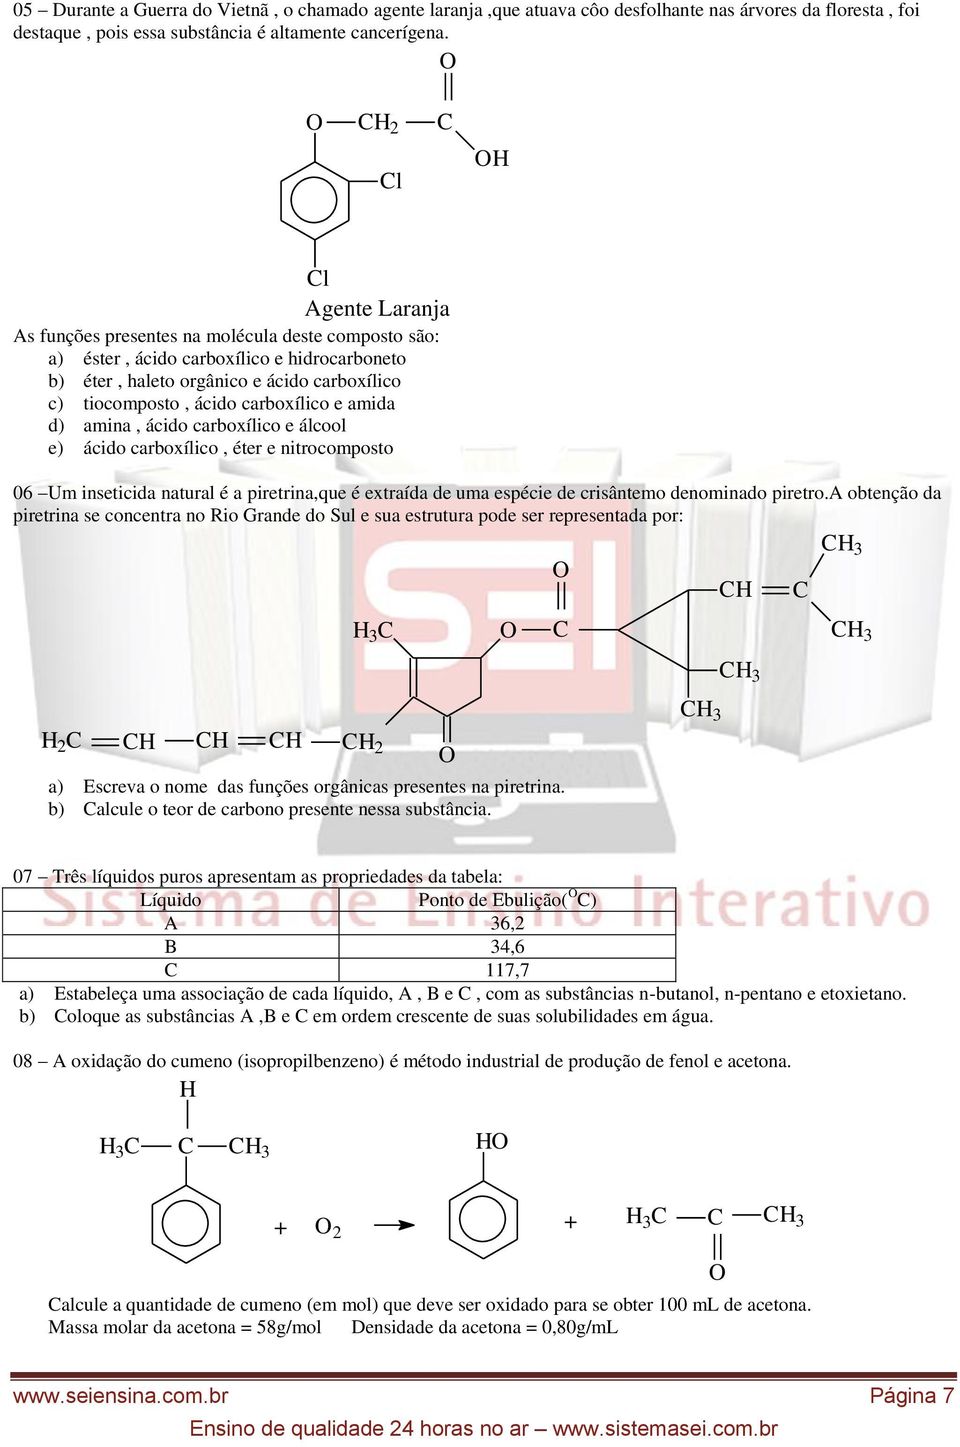 amida d) amina, ácido carboxílico e álcool e) ácido carboxílico, éter e nitrocomposto 06 Um inseticida natural é a piretrina,que é extraída de uma espécie de crisântemo denominado piretro.